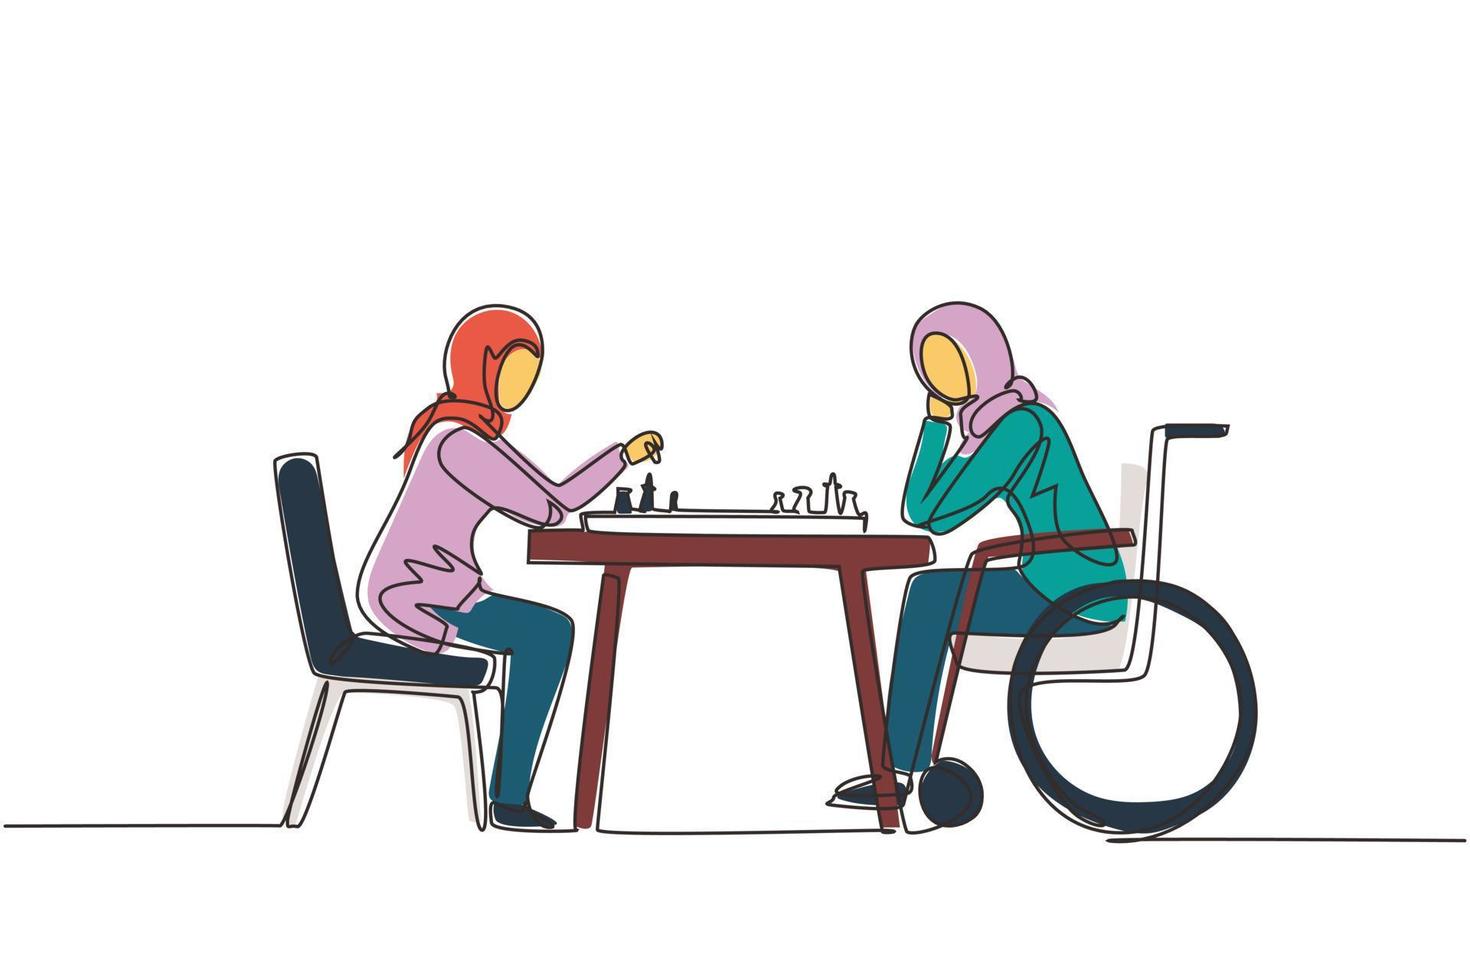 kontinuierliche einzeilige zeichnung behinderte junge arabische frau im rollstuhl spielt schach mit freund. Menschen zu sozialer Anpassung, Hobby, Toleranz, Zugänglichkeit, Diversität. einzeiliger Entwurfsvektor vektor